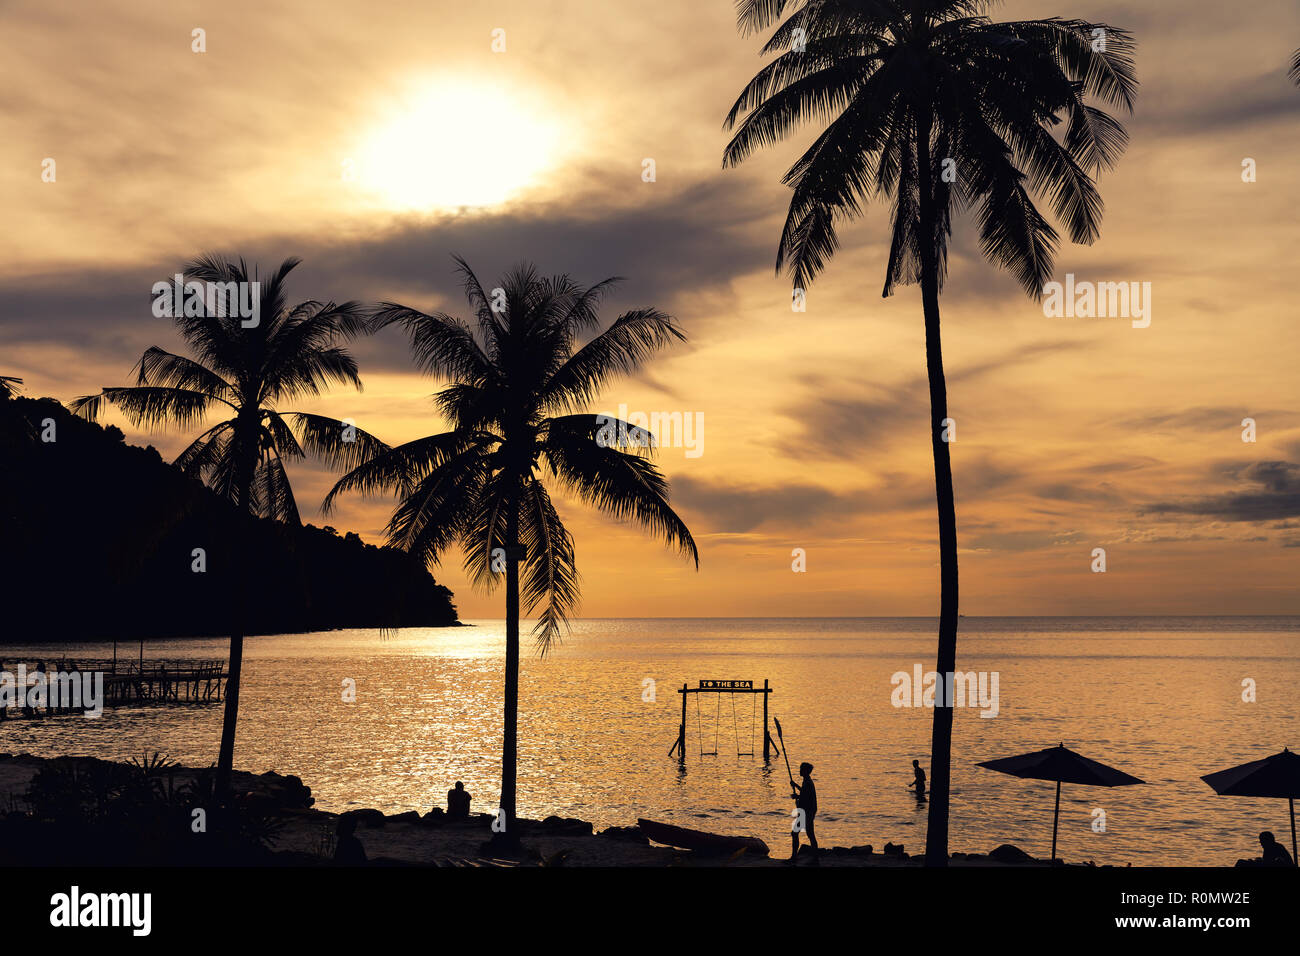 Nature paysage incroyable plage tropicale avec palmiers et swing en mer au coucher du soleil Banque D'Images